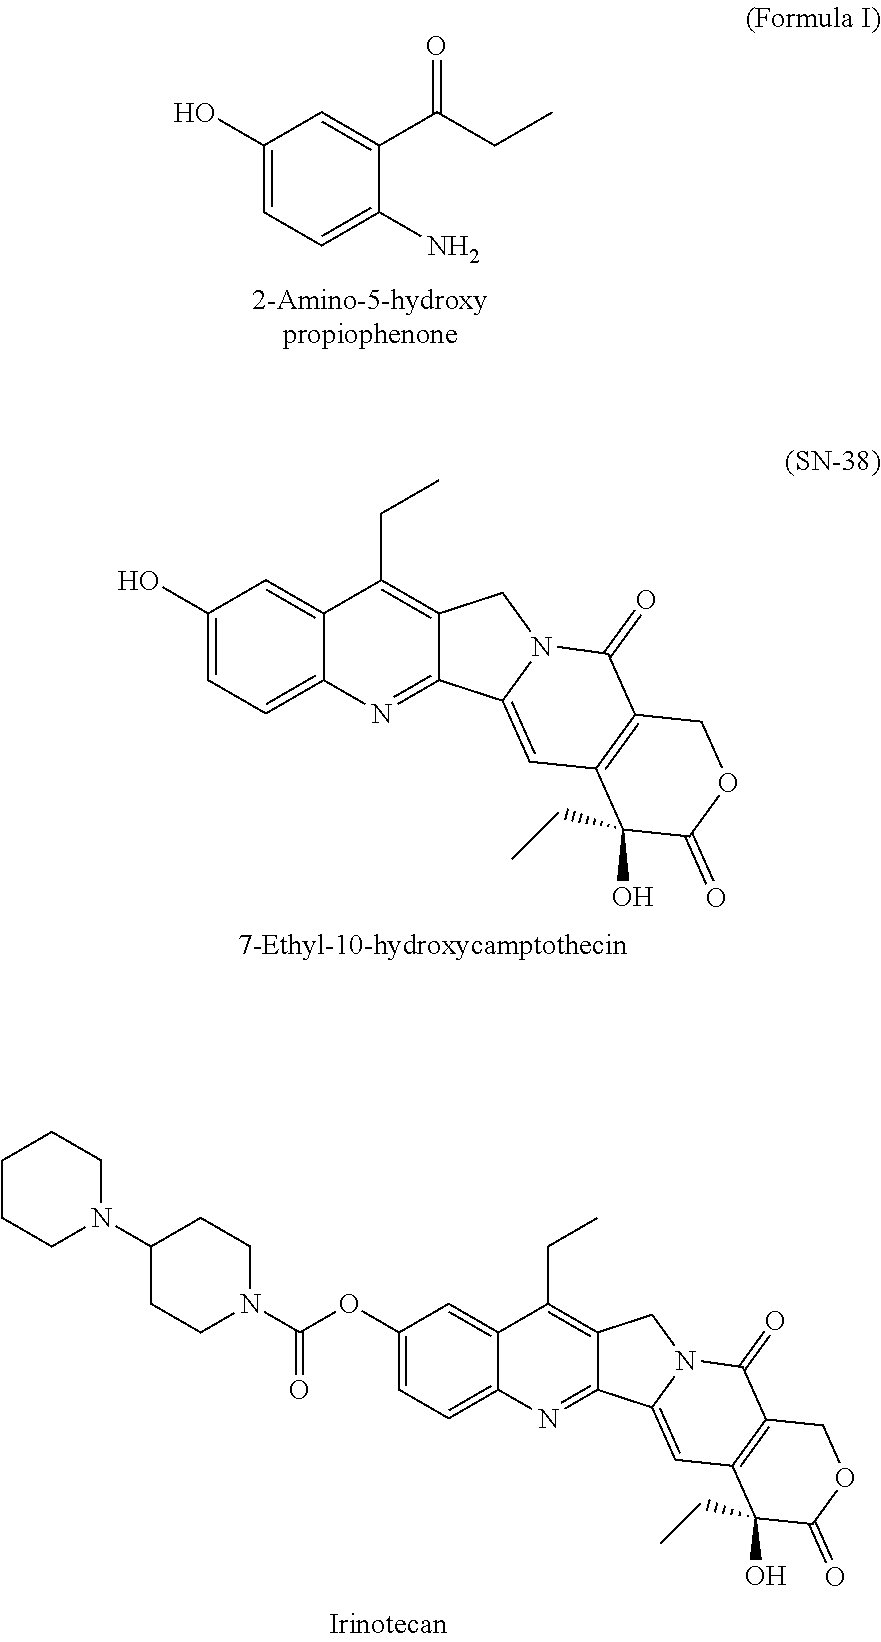 Process for preparation of 2-Amino-5-hydroxy propiophenone